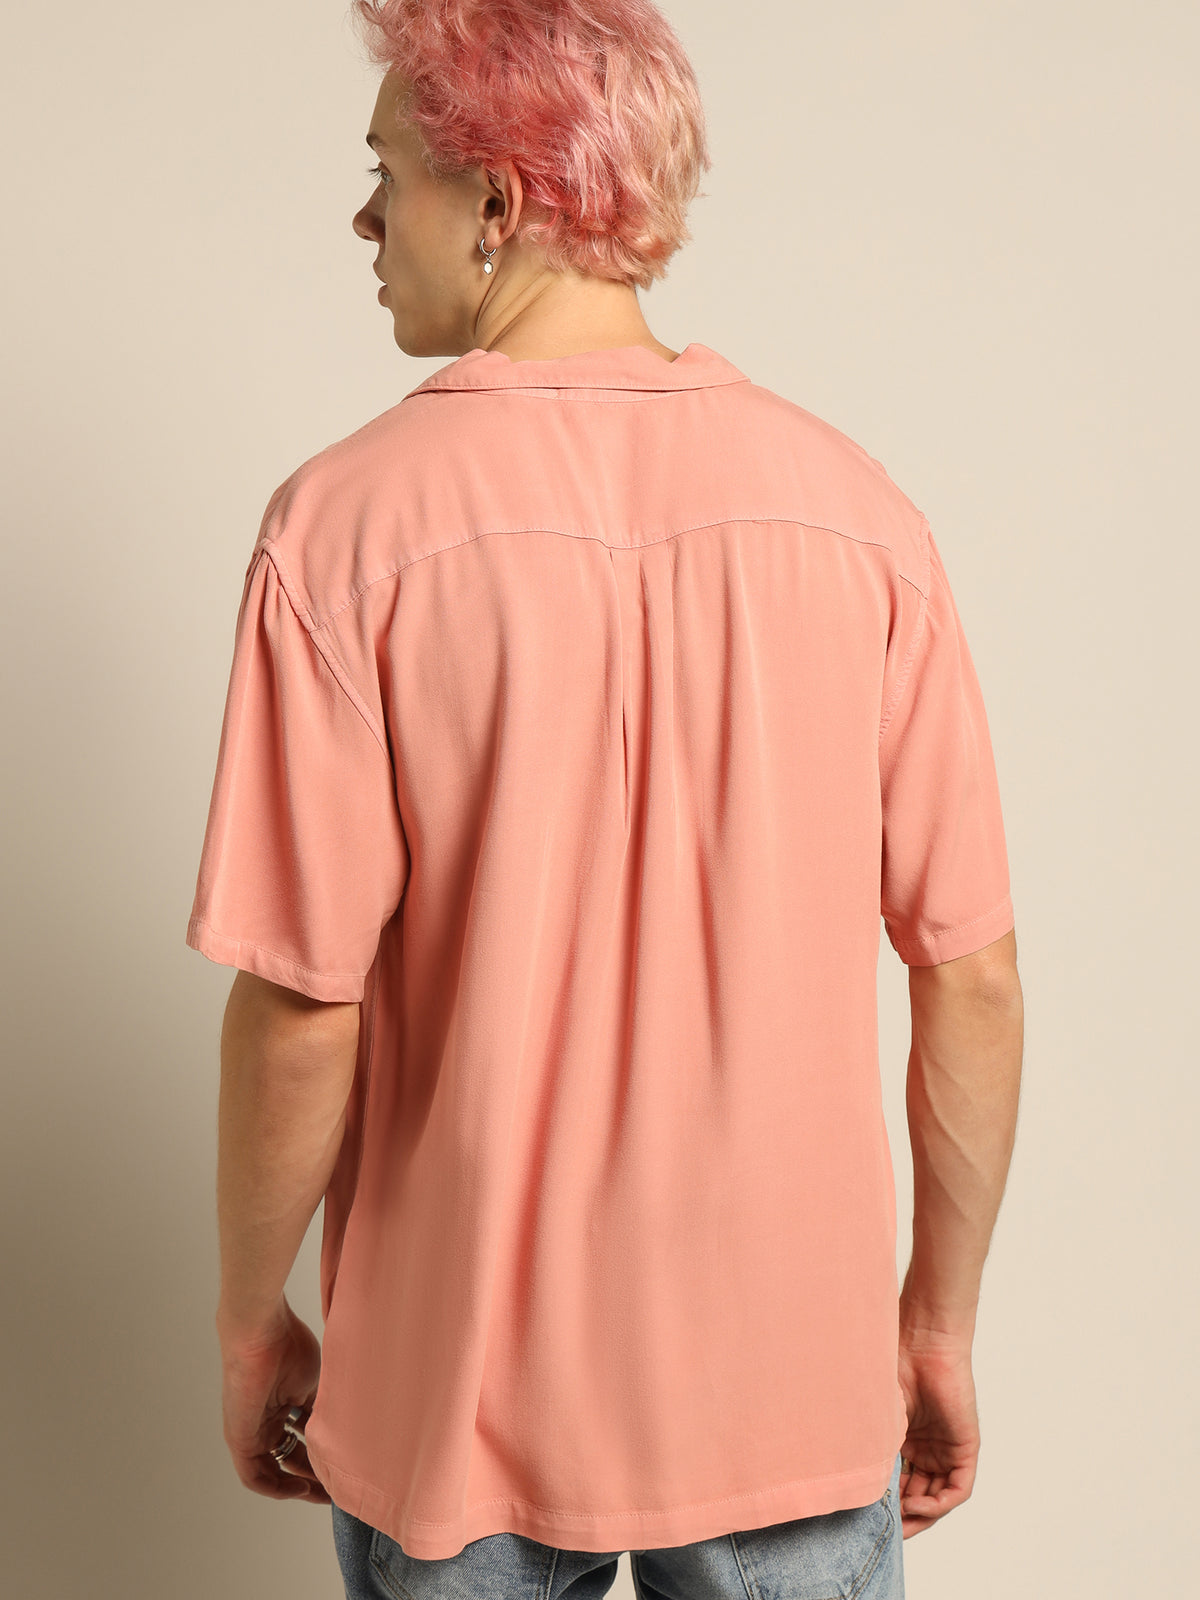 Saratoga Shirt in Pink